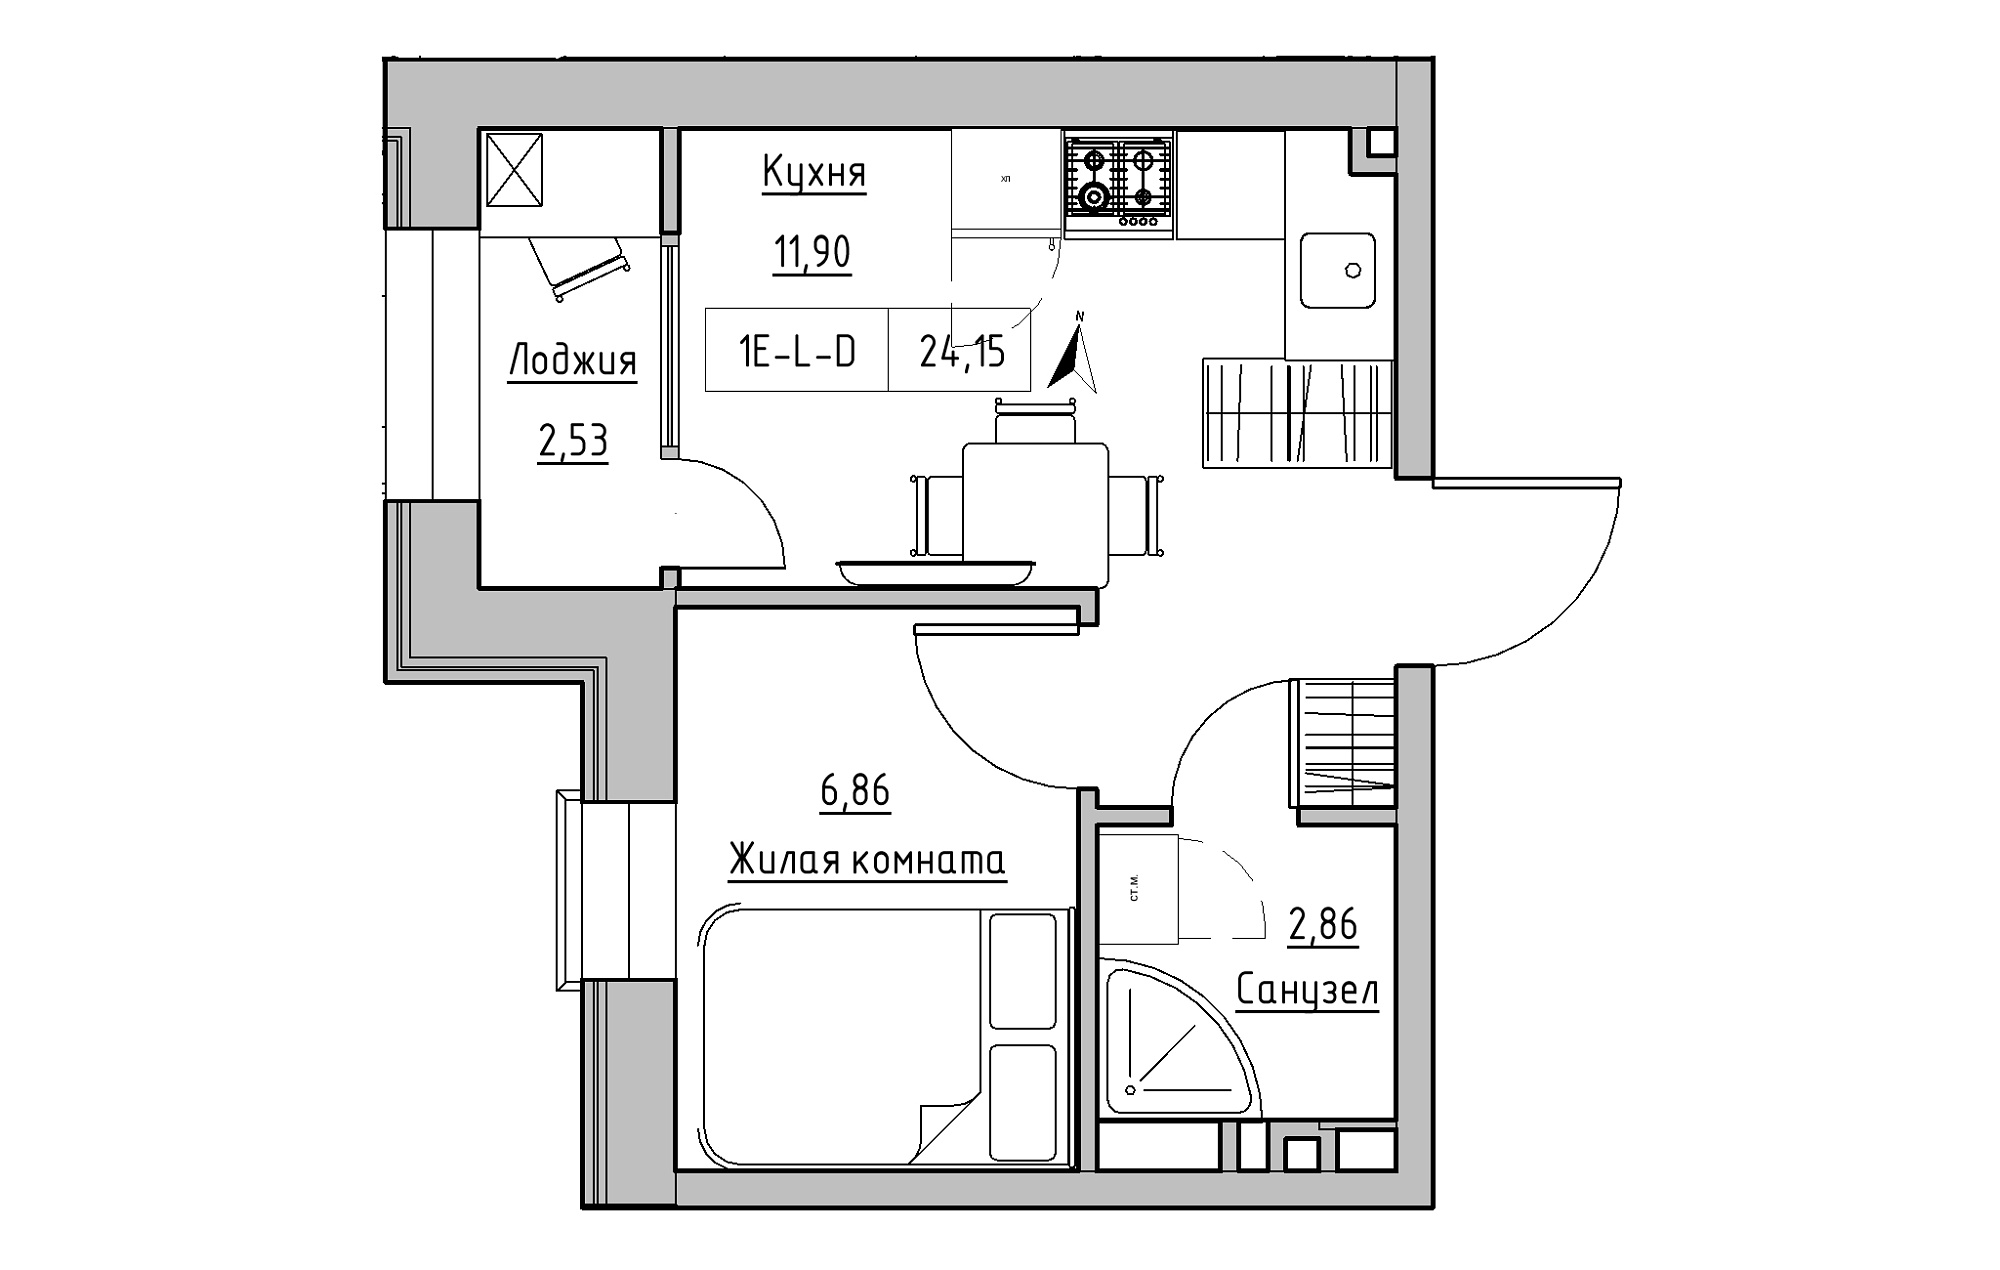 Планування 1-к квартира площею 24.15м2, KS-019-04/0001.